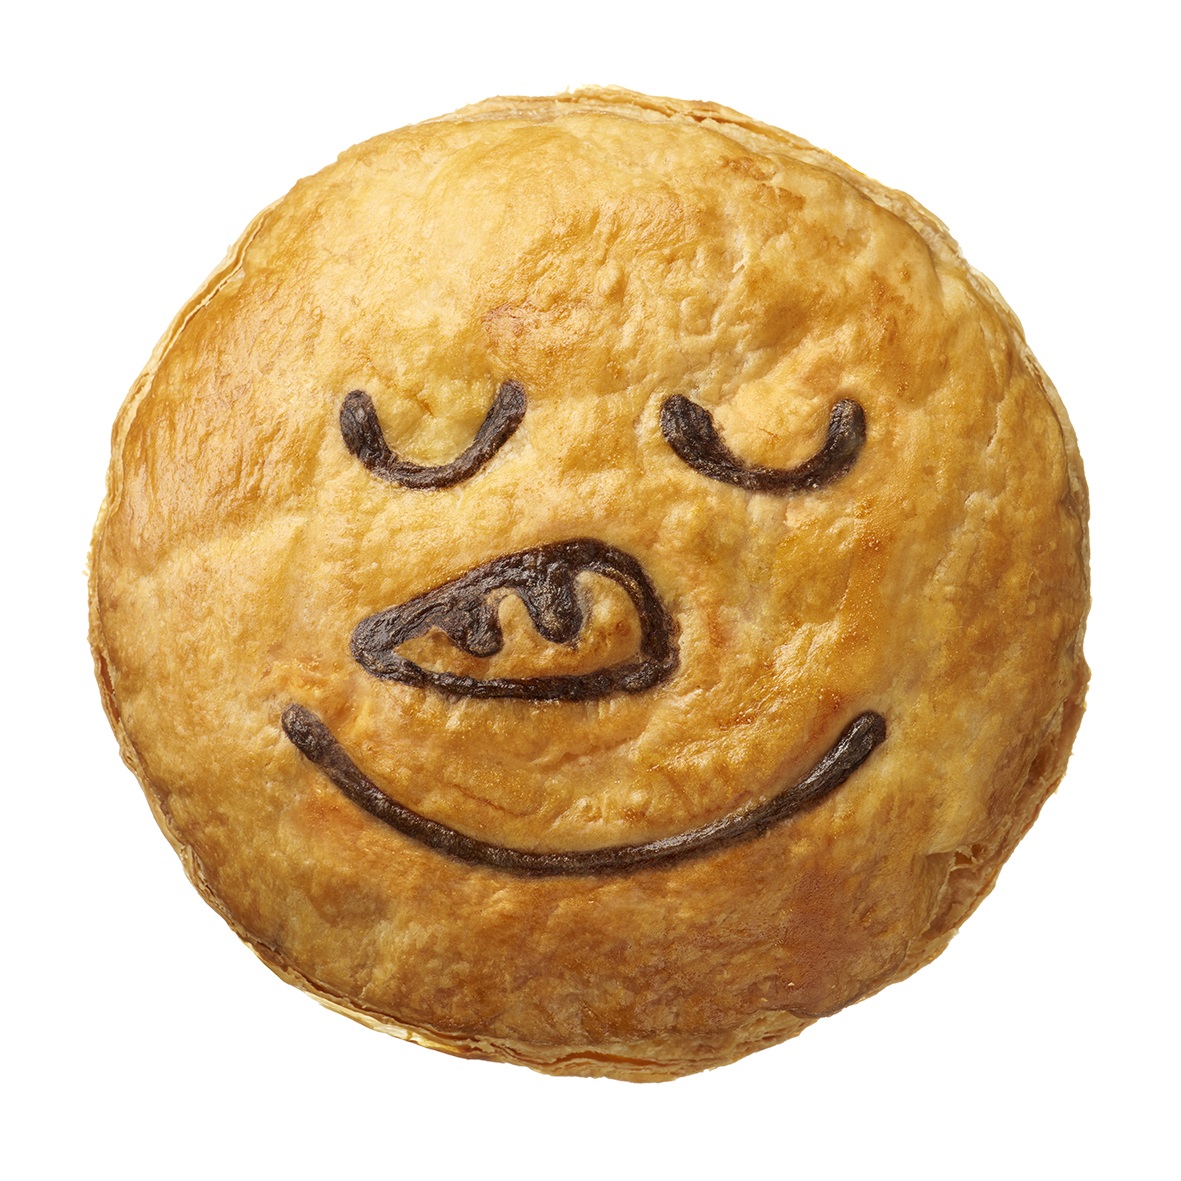 オーストラリア発祥のパイ専門店が「Happy Christmas Pie face」をテーマに新商品を発売